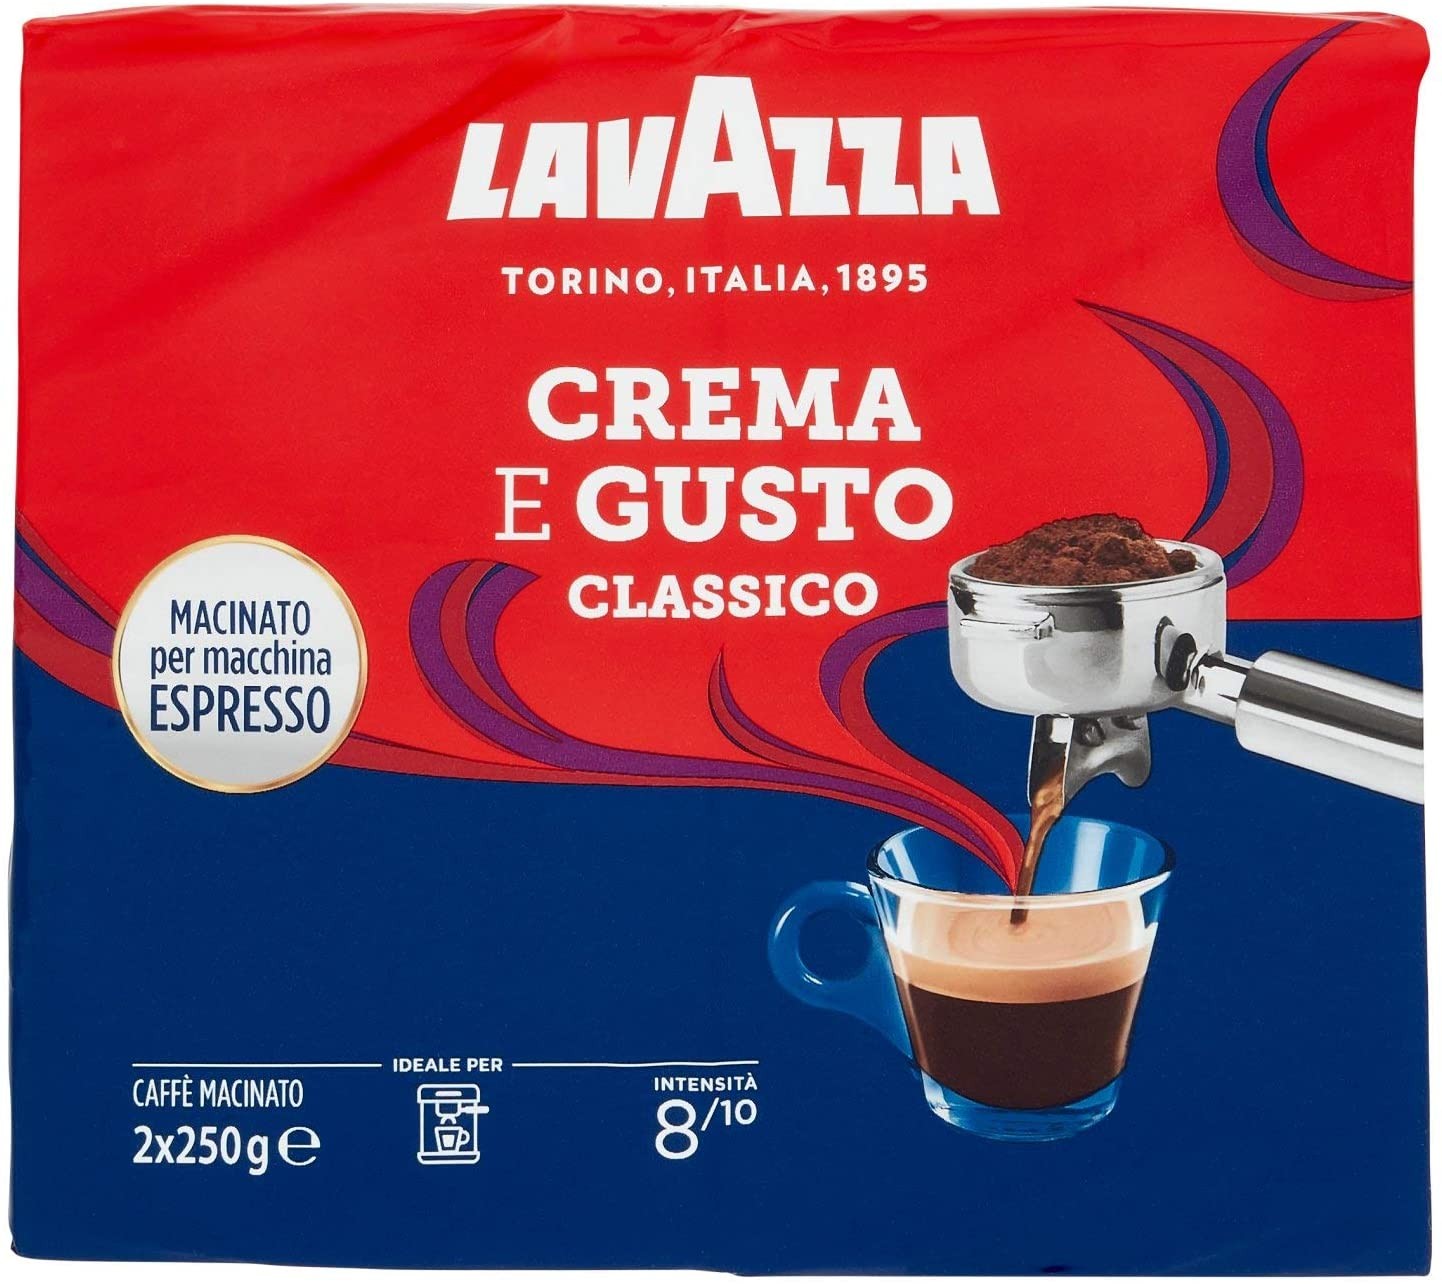 Lavazza Caffè Macinato, Crema e Gusto Classico, 2 x 250g – Raspada